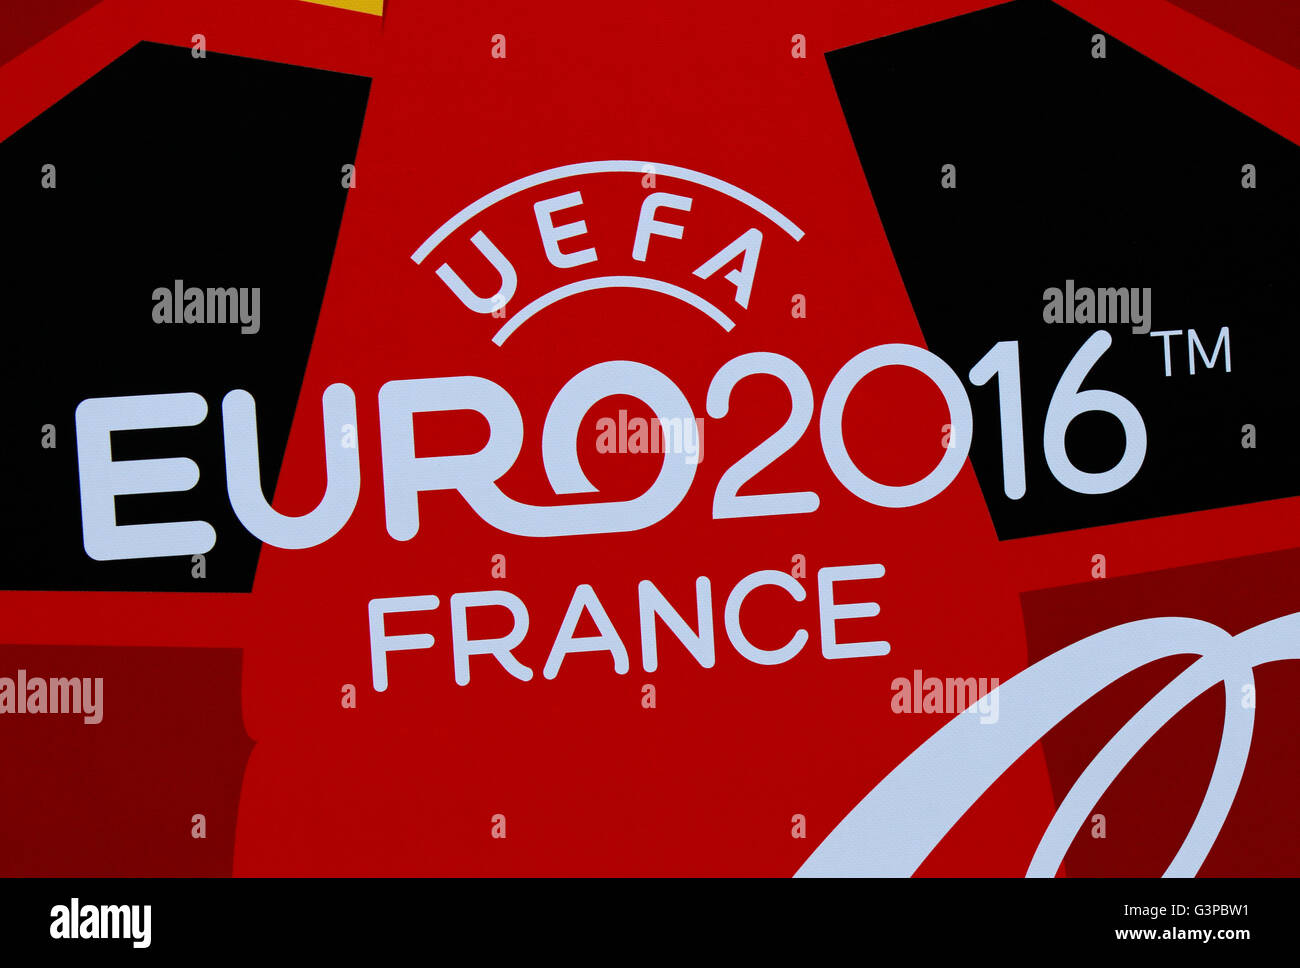 Das Logo der "Euro 2016" - Fussball Europameisterschaft in Frankreich 2016, Berlino. Foto Stock